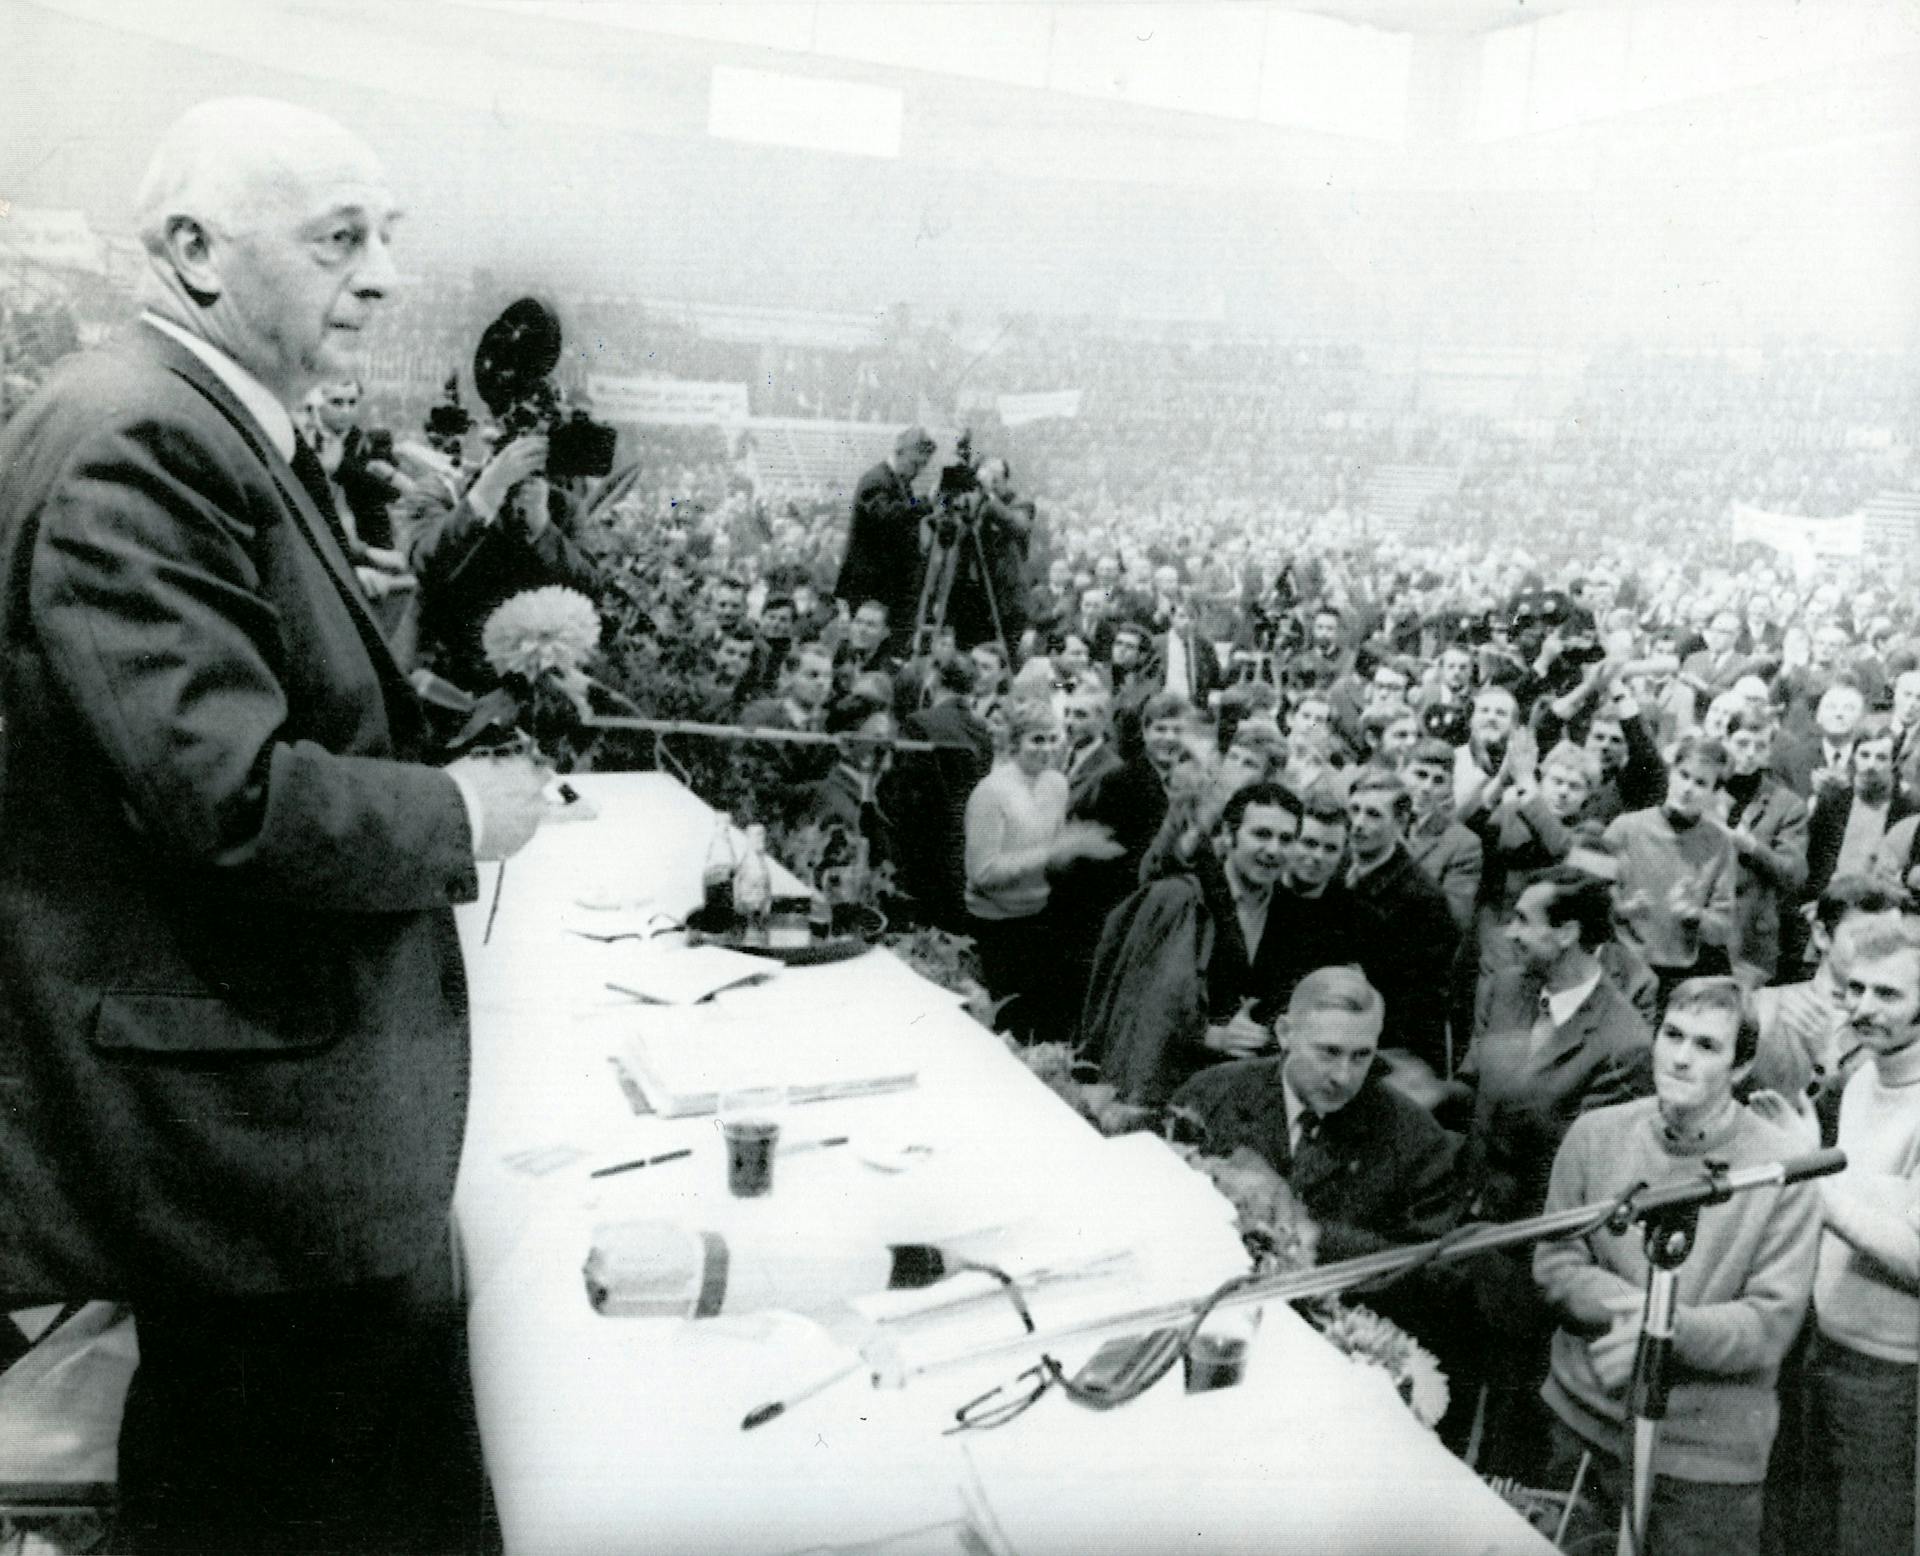  Mansholt bij een boerenprotest in Kiel, Duitsland 13 december 1969. Mansholt probeert de ruim 4000 boeren uit Sleeswijk-Holstein toe te spreken, terwijl zij hem uitjoelen. Credits: Nationaal Archief/ Spaarnestad Photo/ UPI/ fotograaf onbekend 